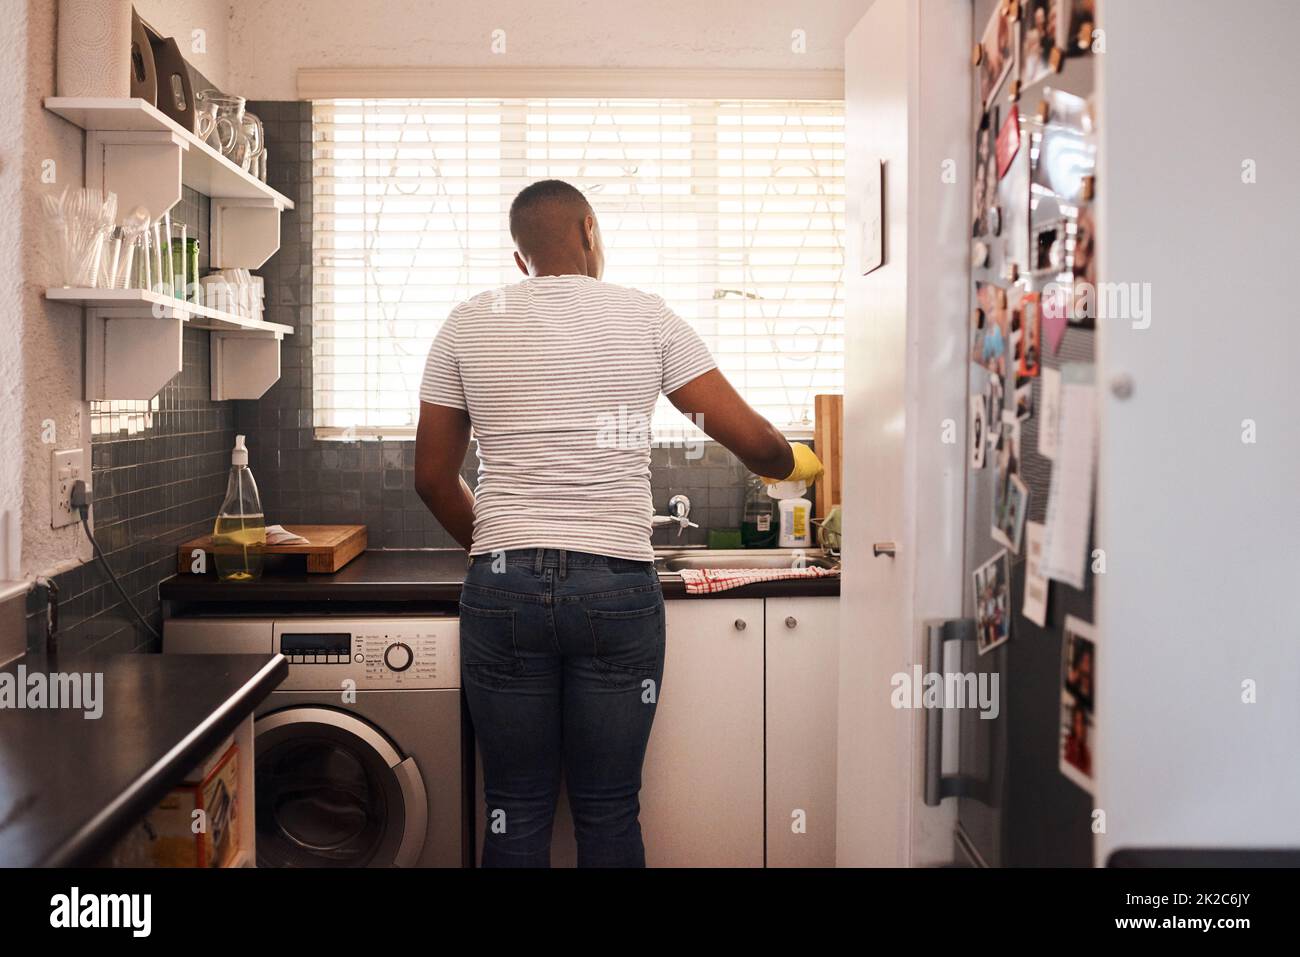 Eine saubere Küche ist besser als eine schmutzige. Rückansicht eines Mannes, der das Geschirr zu Hause macht. Stockfoto